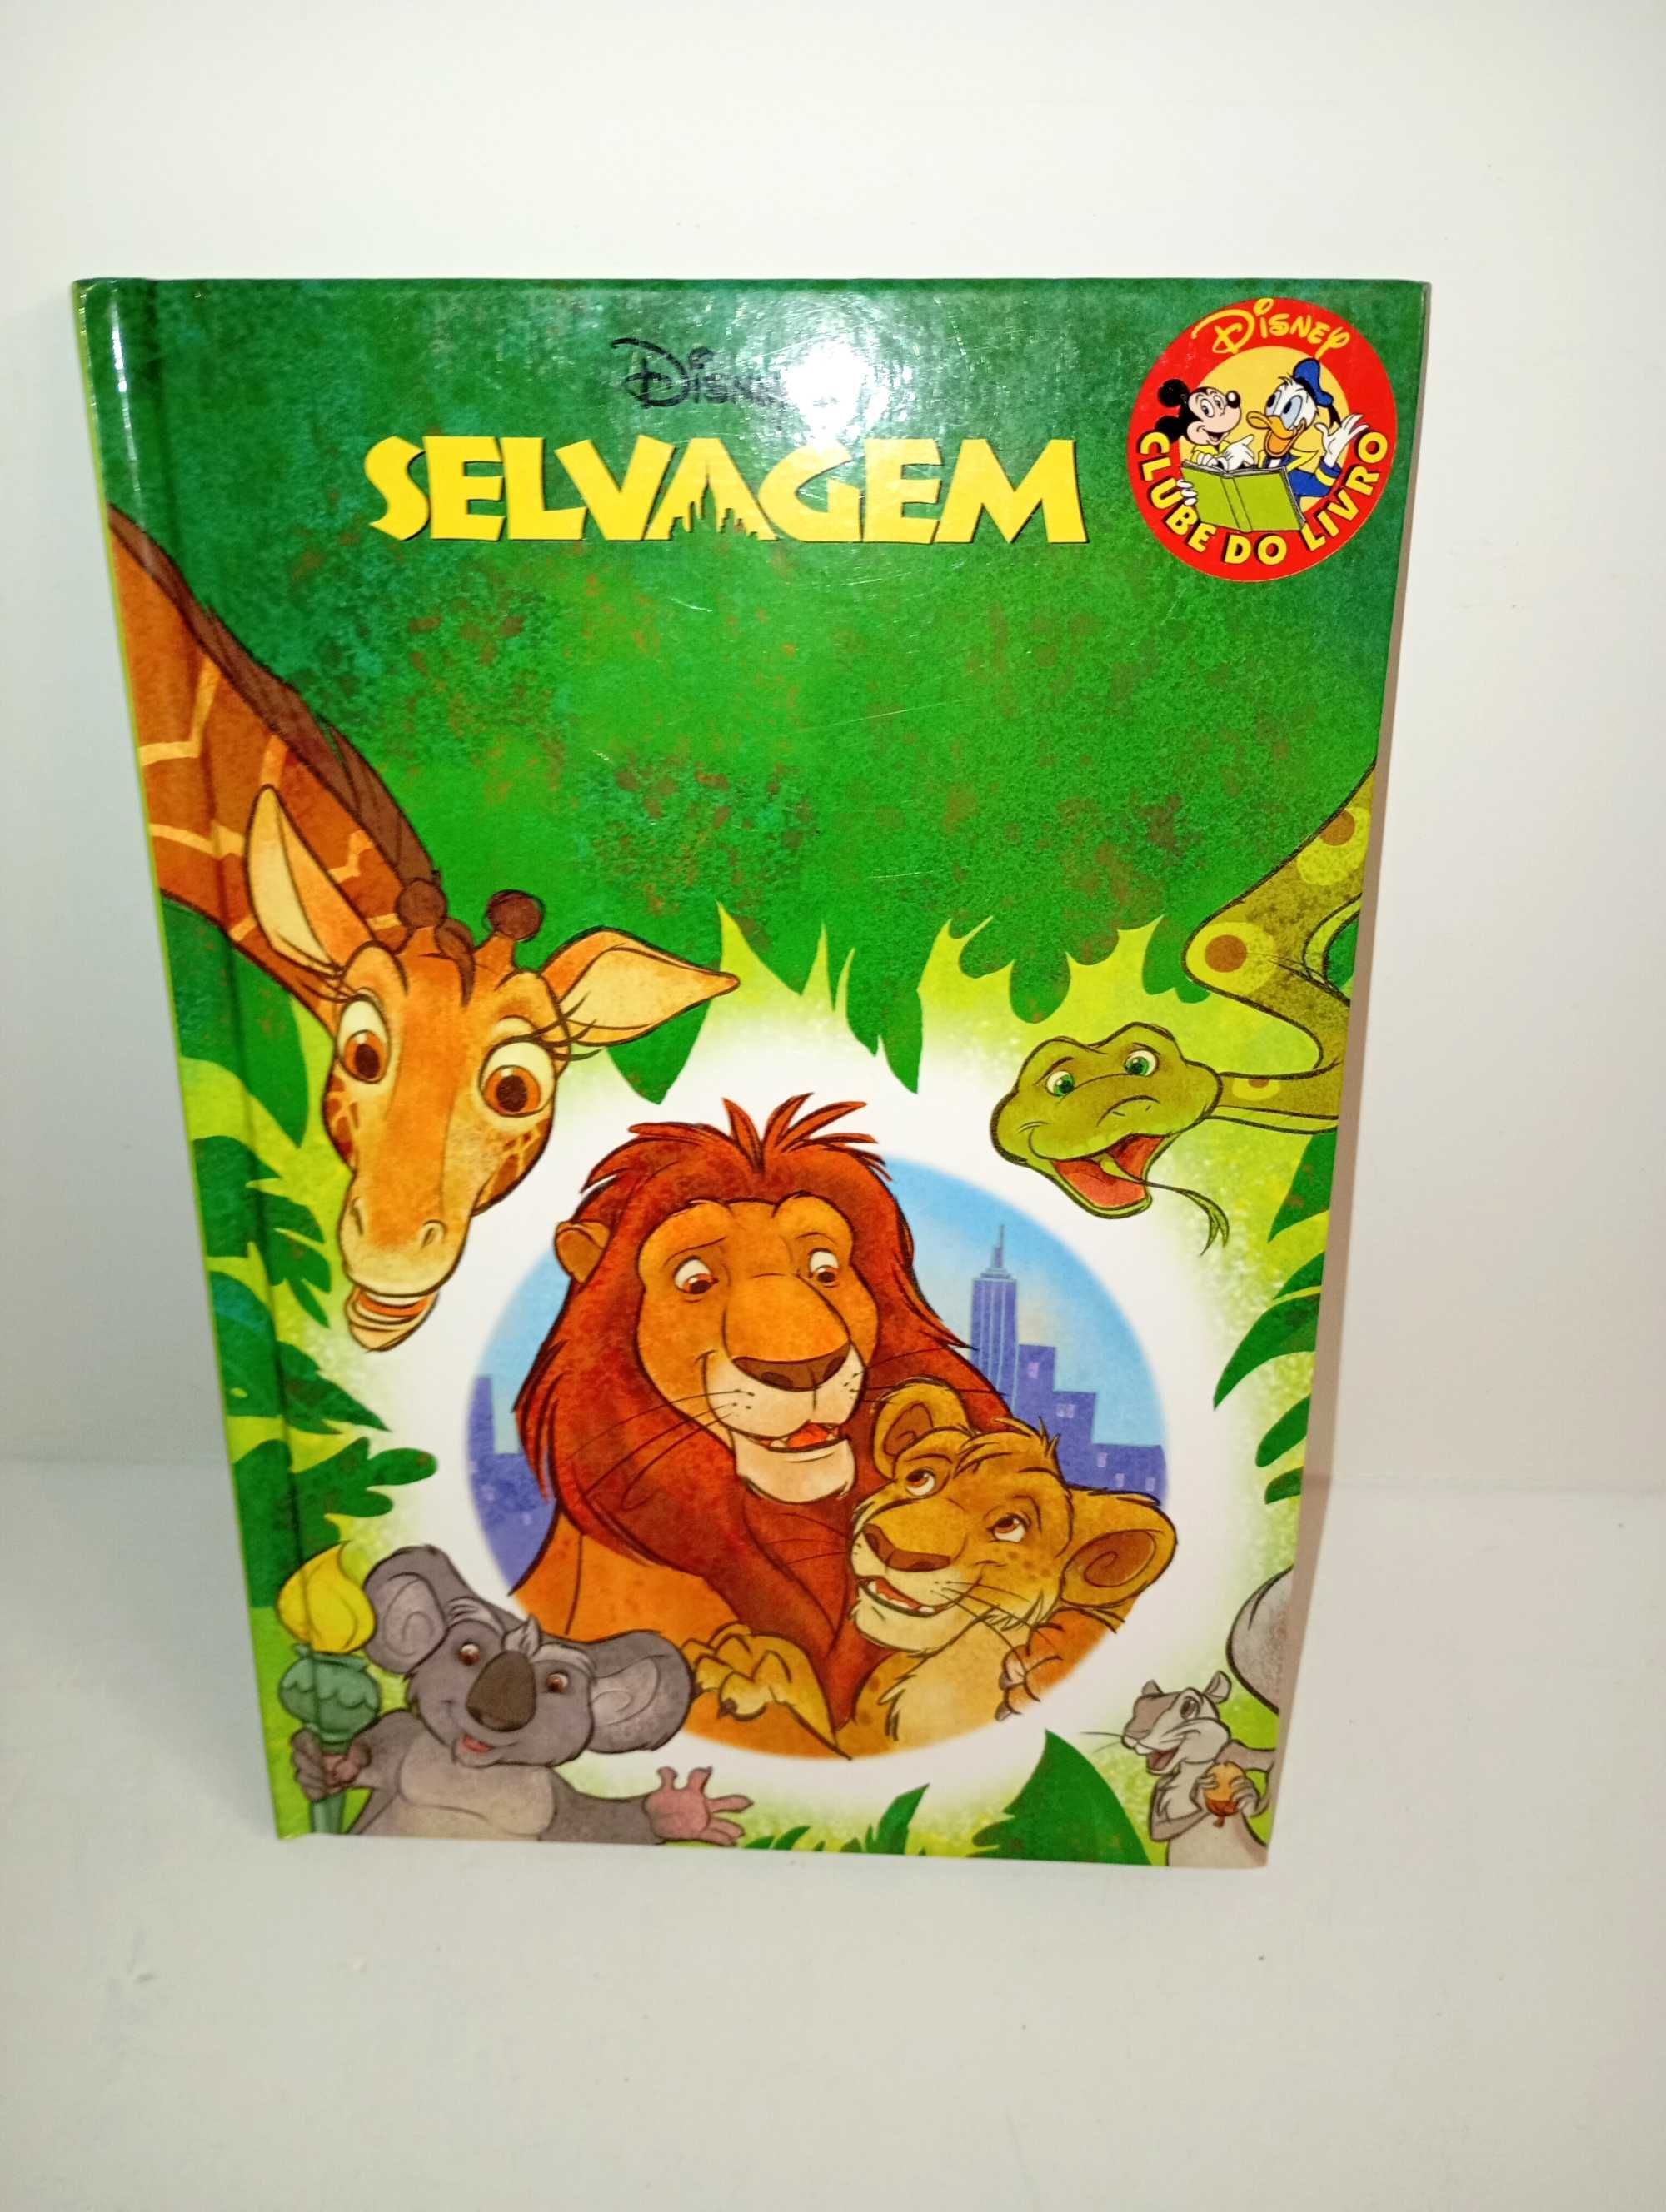 Selvagem - Livro da Disney